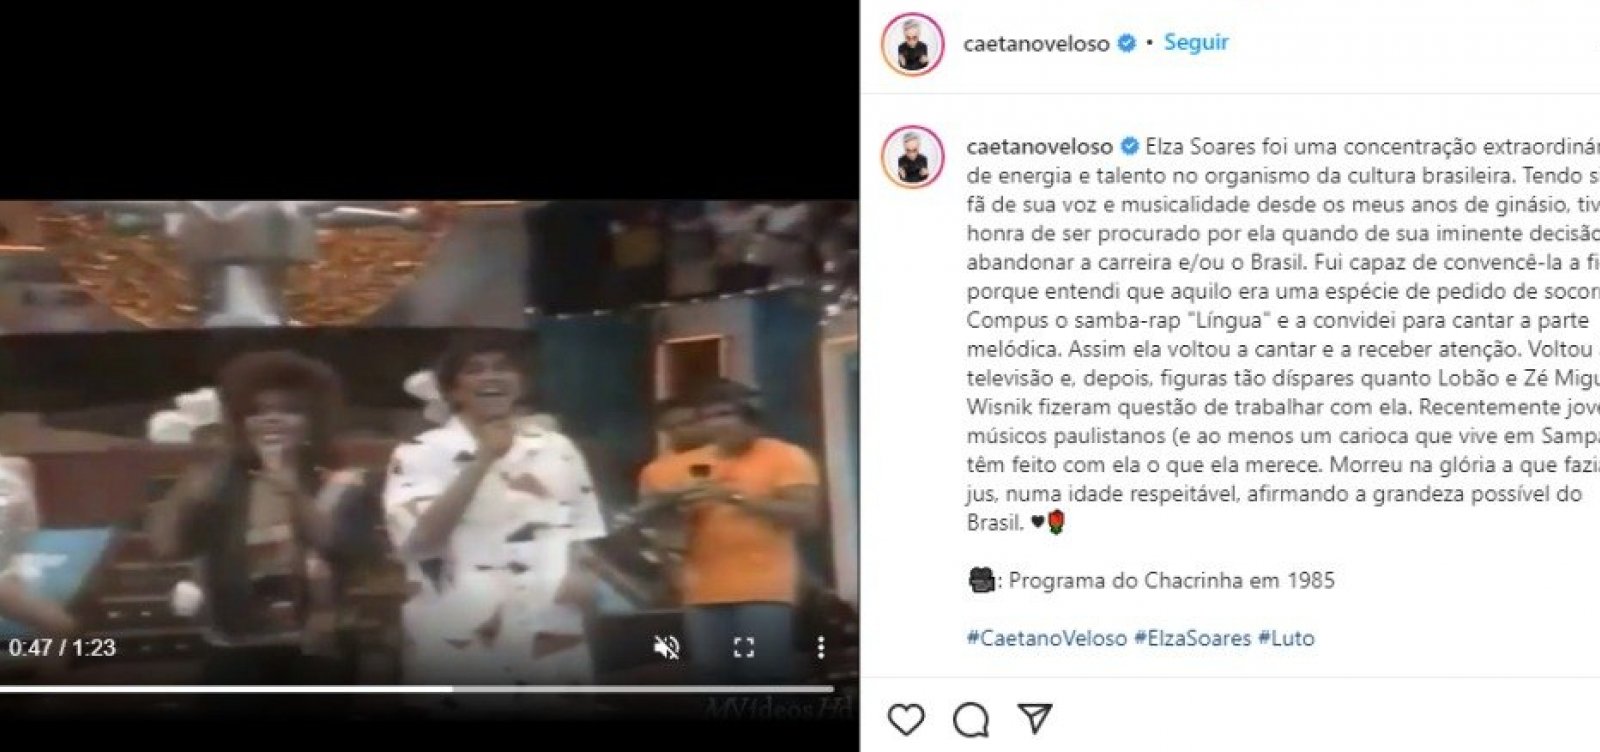 Caetano Veloso lamenta morte de Elza Soares: "Morreu na glória a que fazia jus"